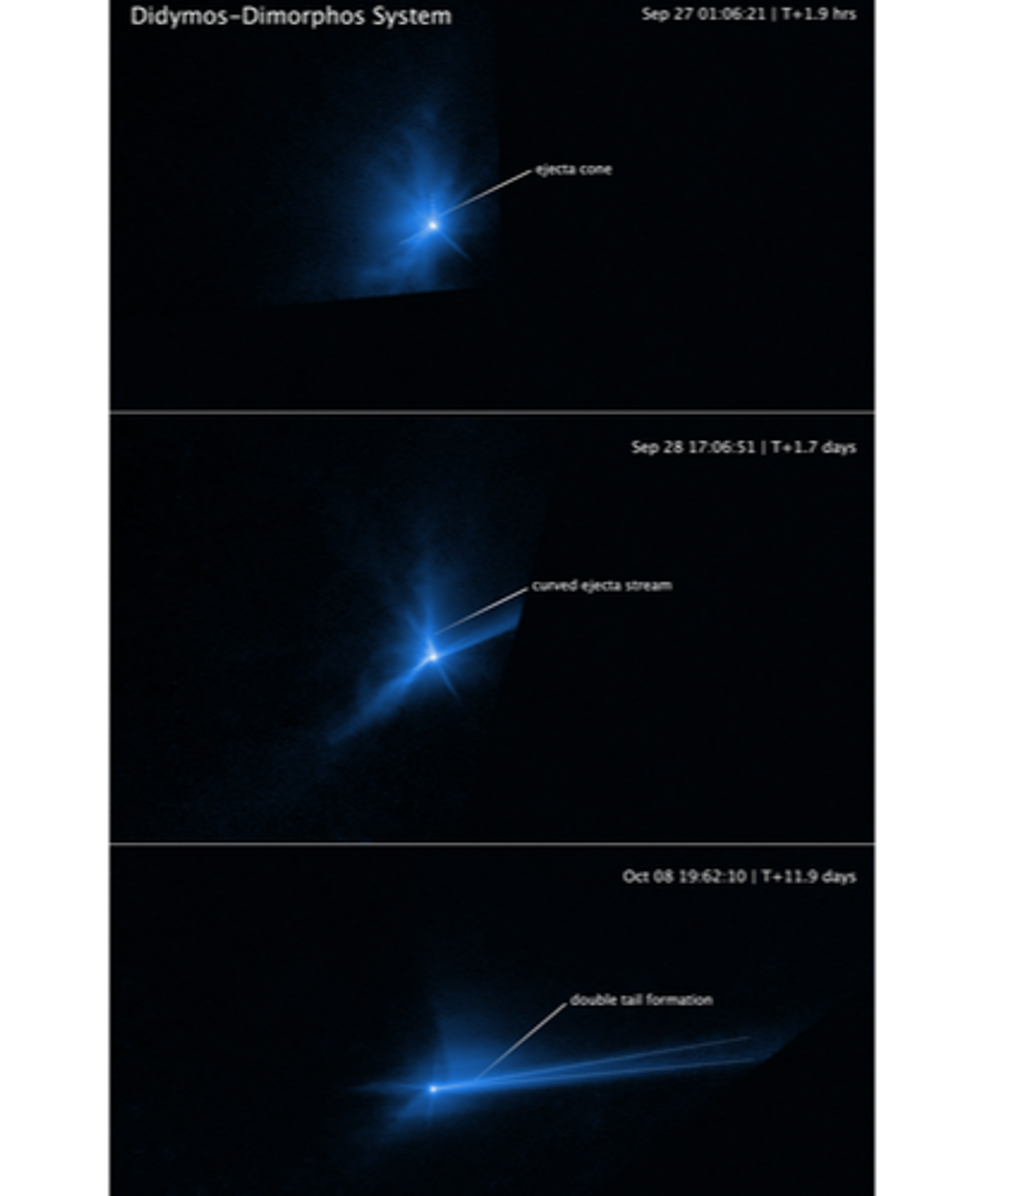 El telescopio Hubble captó el asteroide Dimorphos siendo golpeado